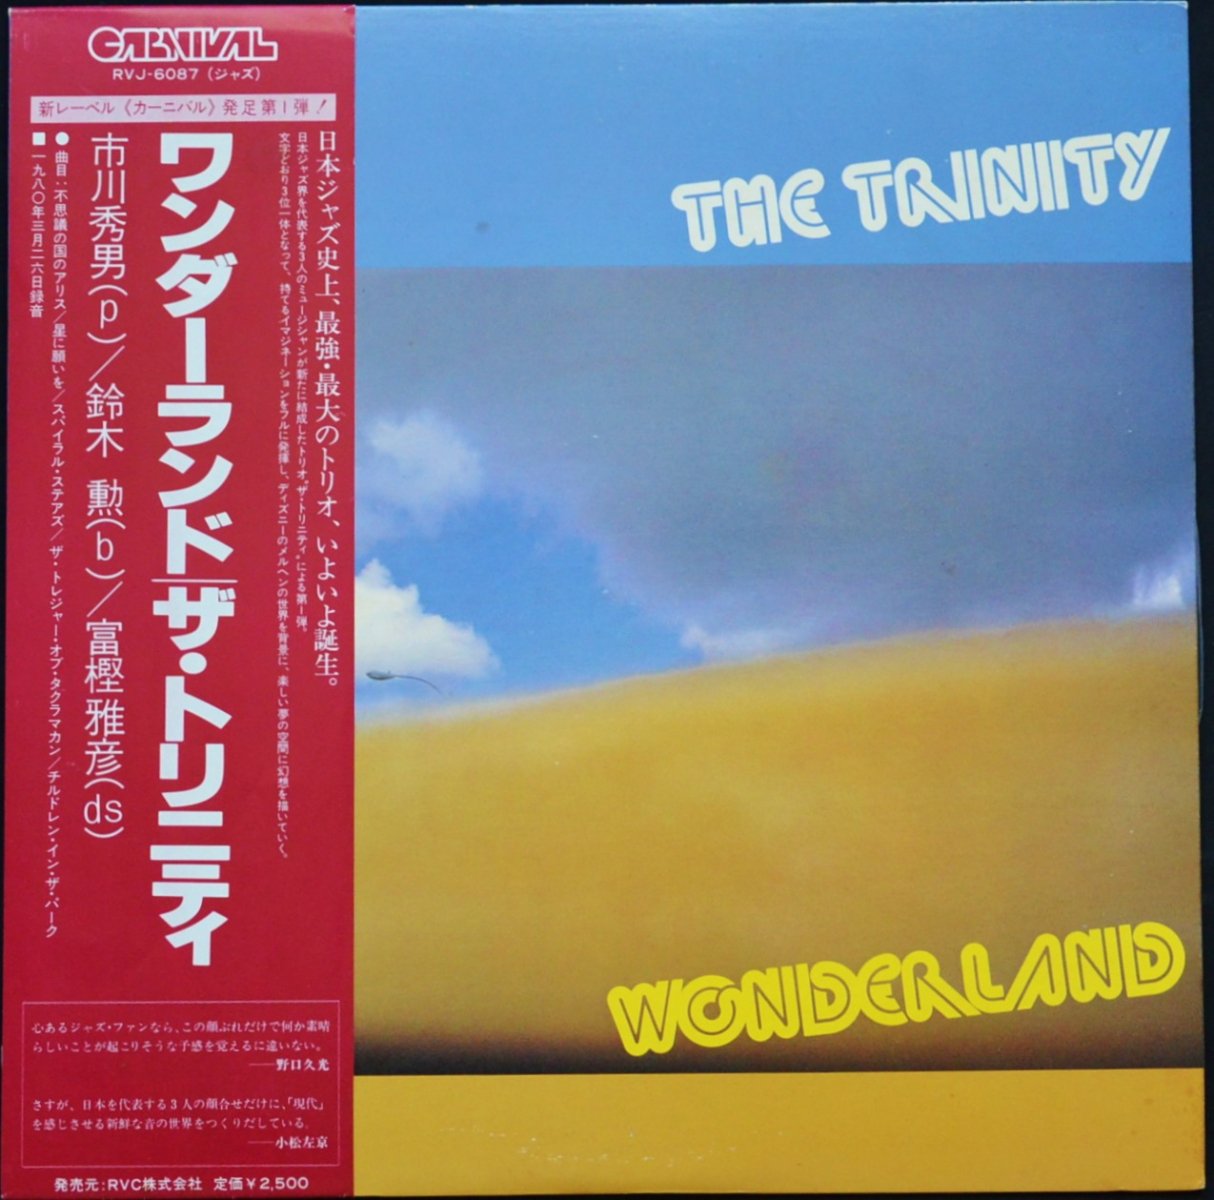 ザ・トリニティ THE TRINITY (市川秀男,鈴木勲,富樫雅彦) / ワンダー・ランド WONDERLAND (LP)